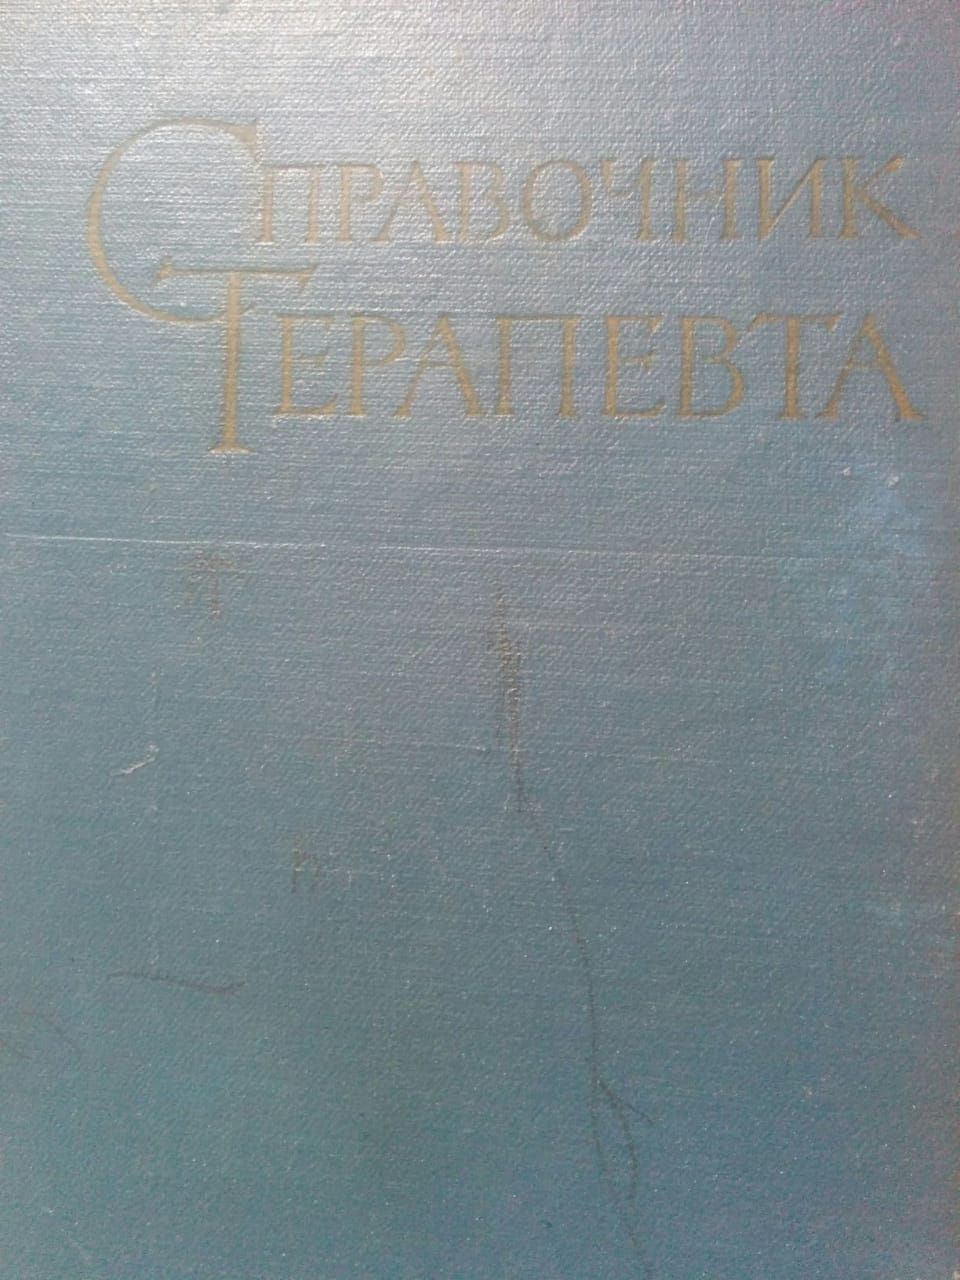 Продам книгу Справочник терапевта,издательство Москва 1962года.